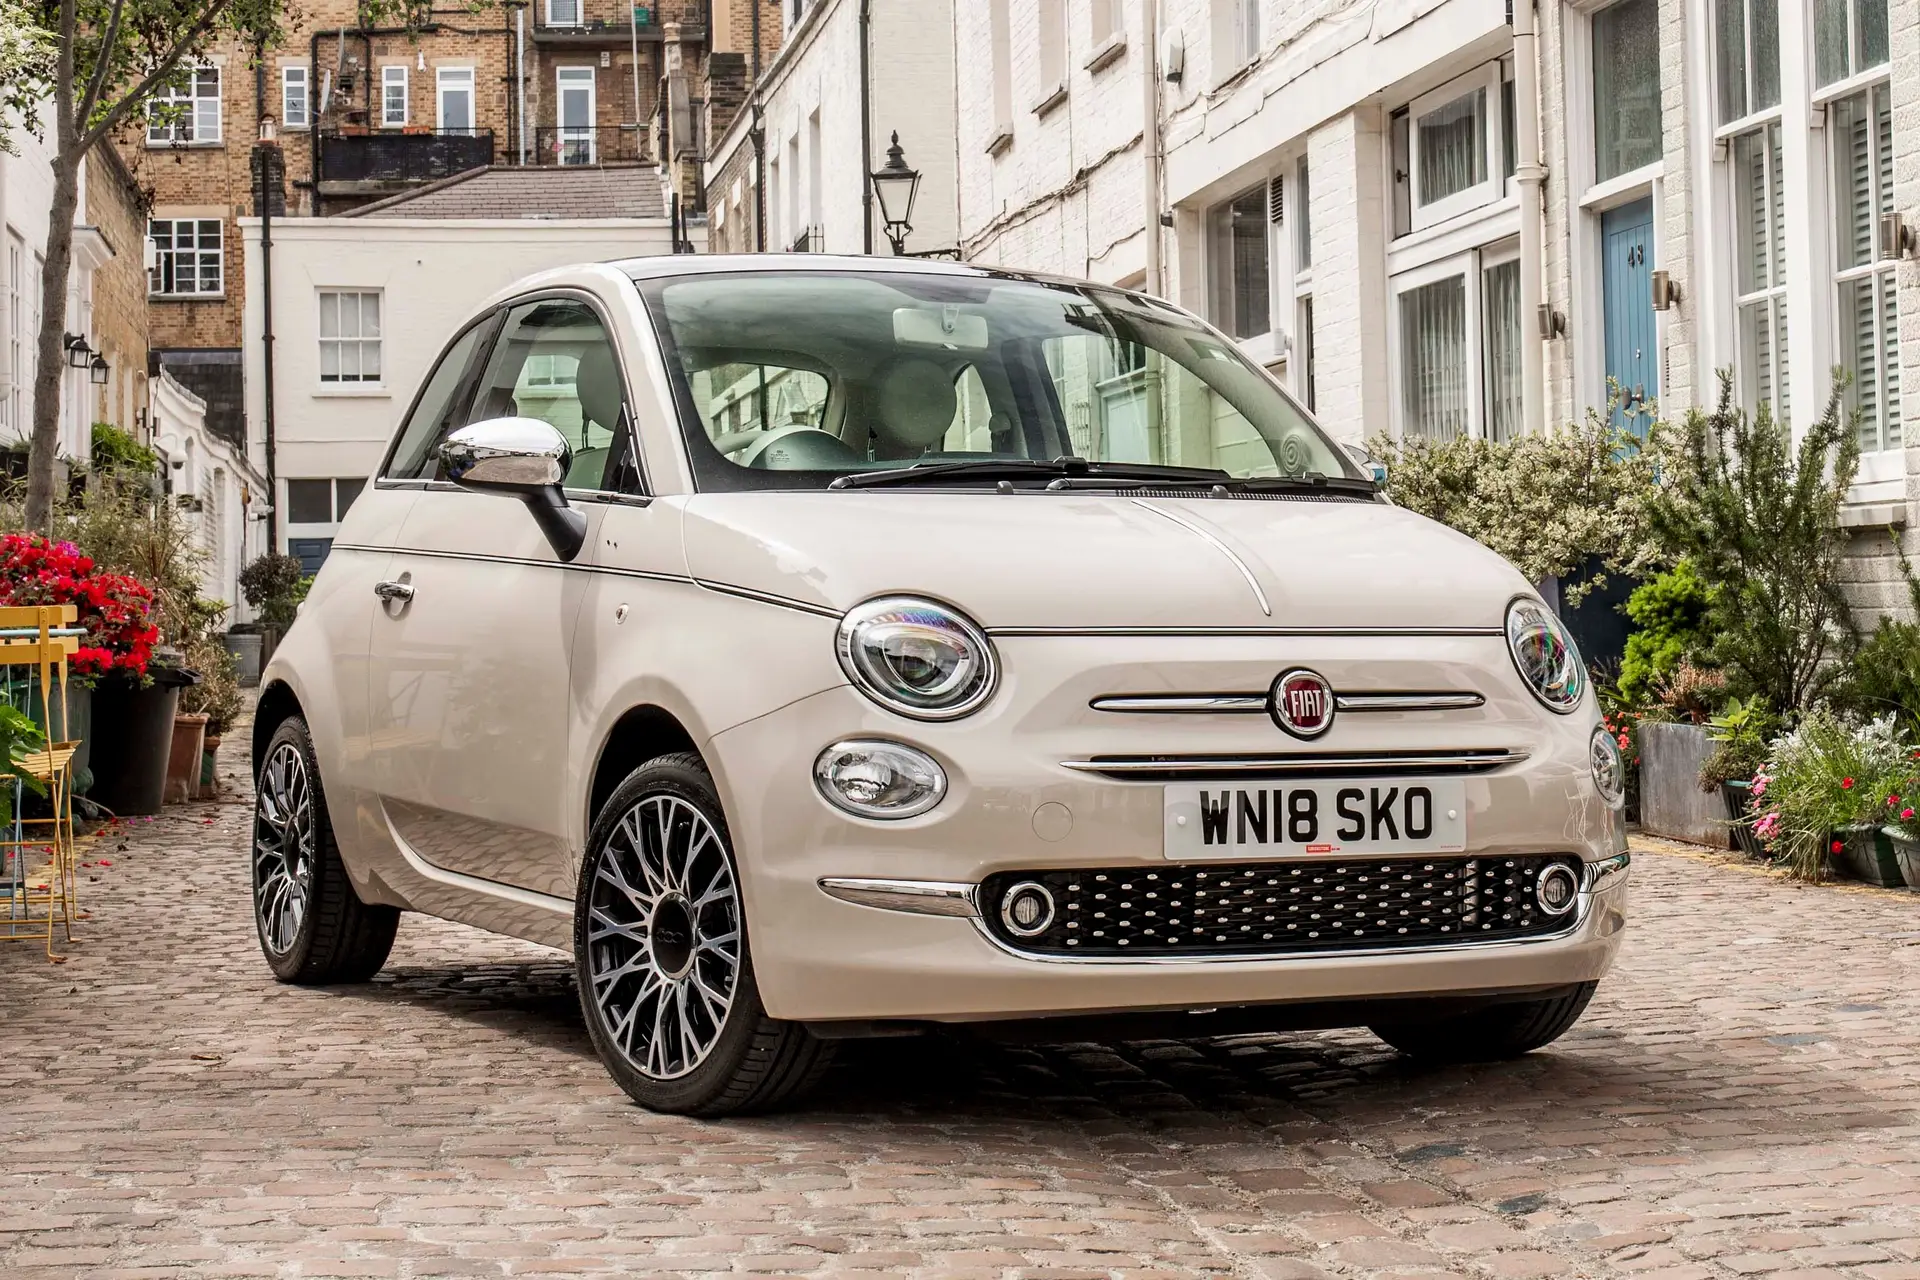 2019 Fiat 500c: Review, Trims, Specs, Price, New Interior Features